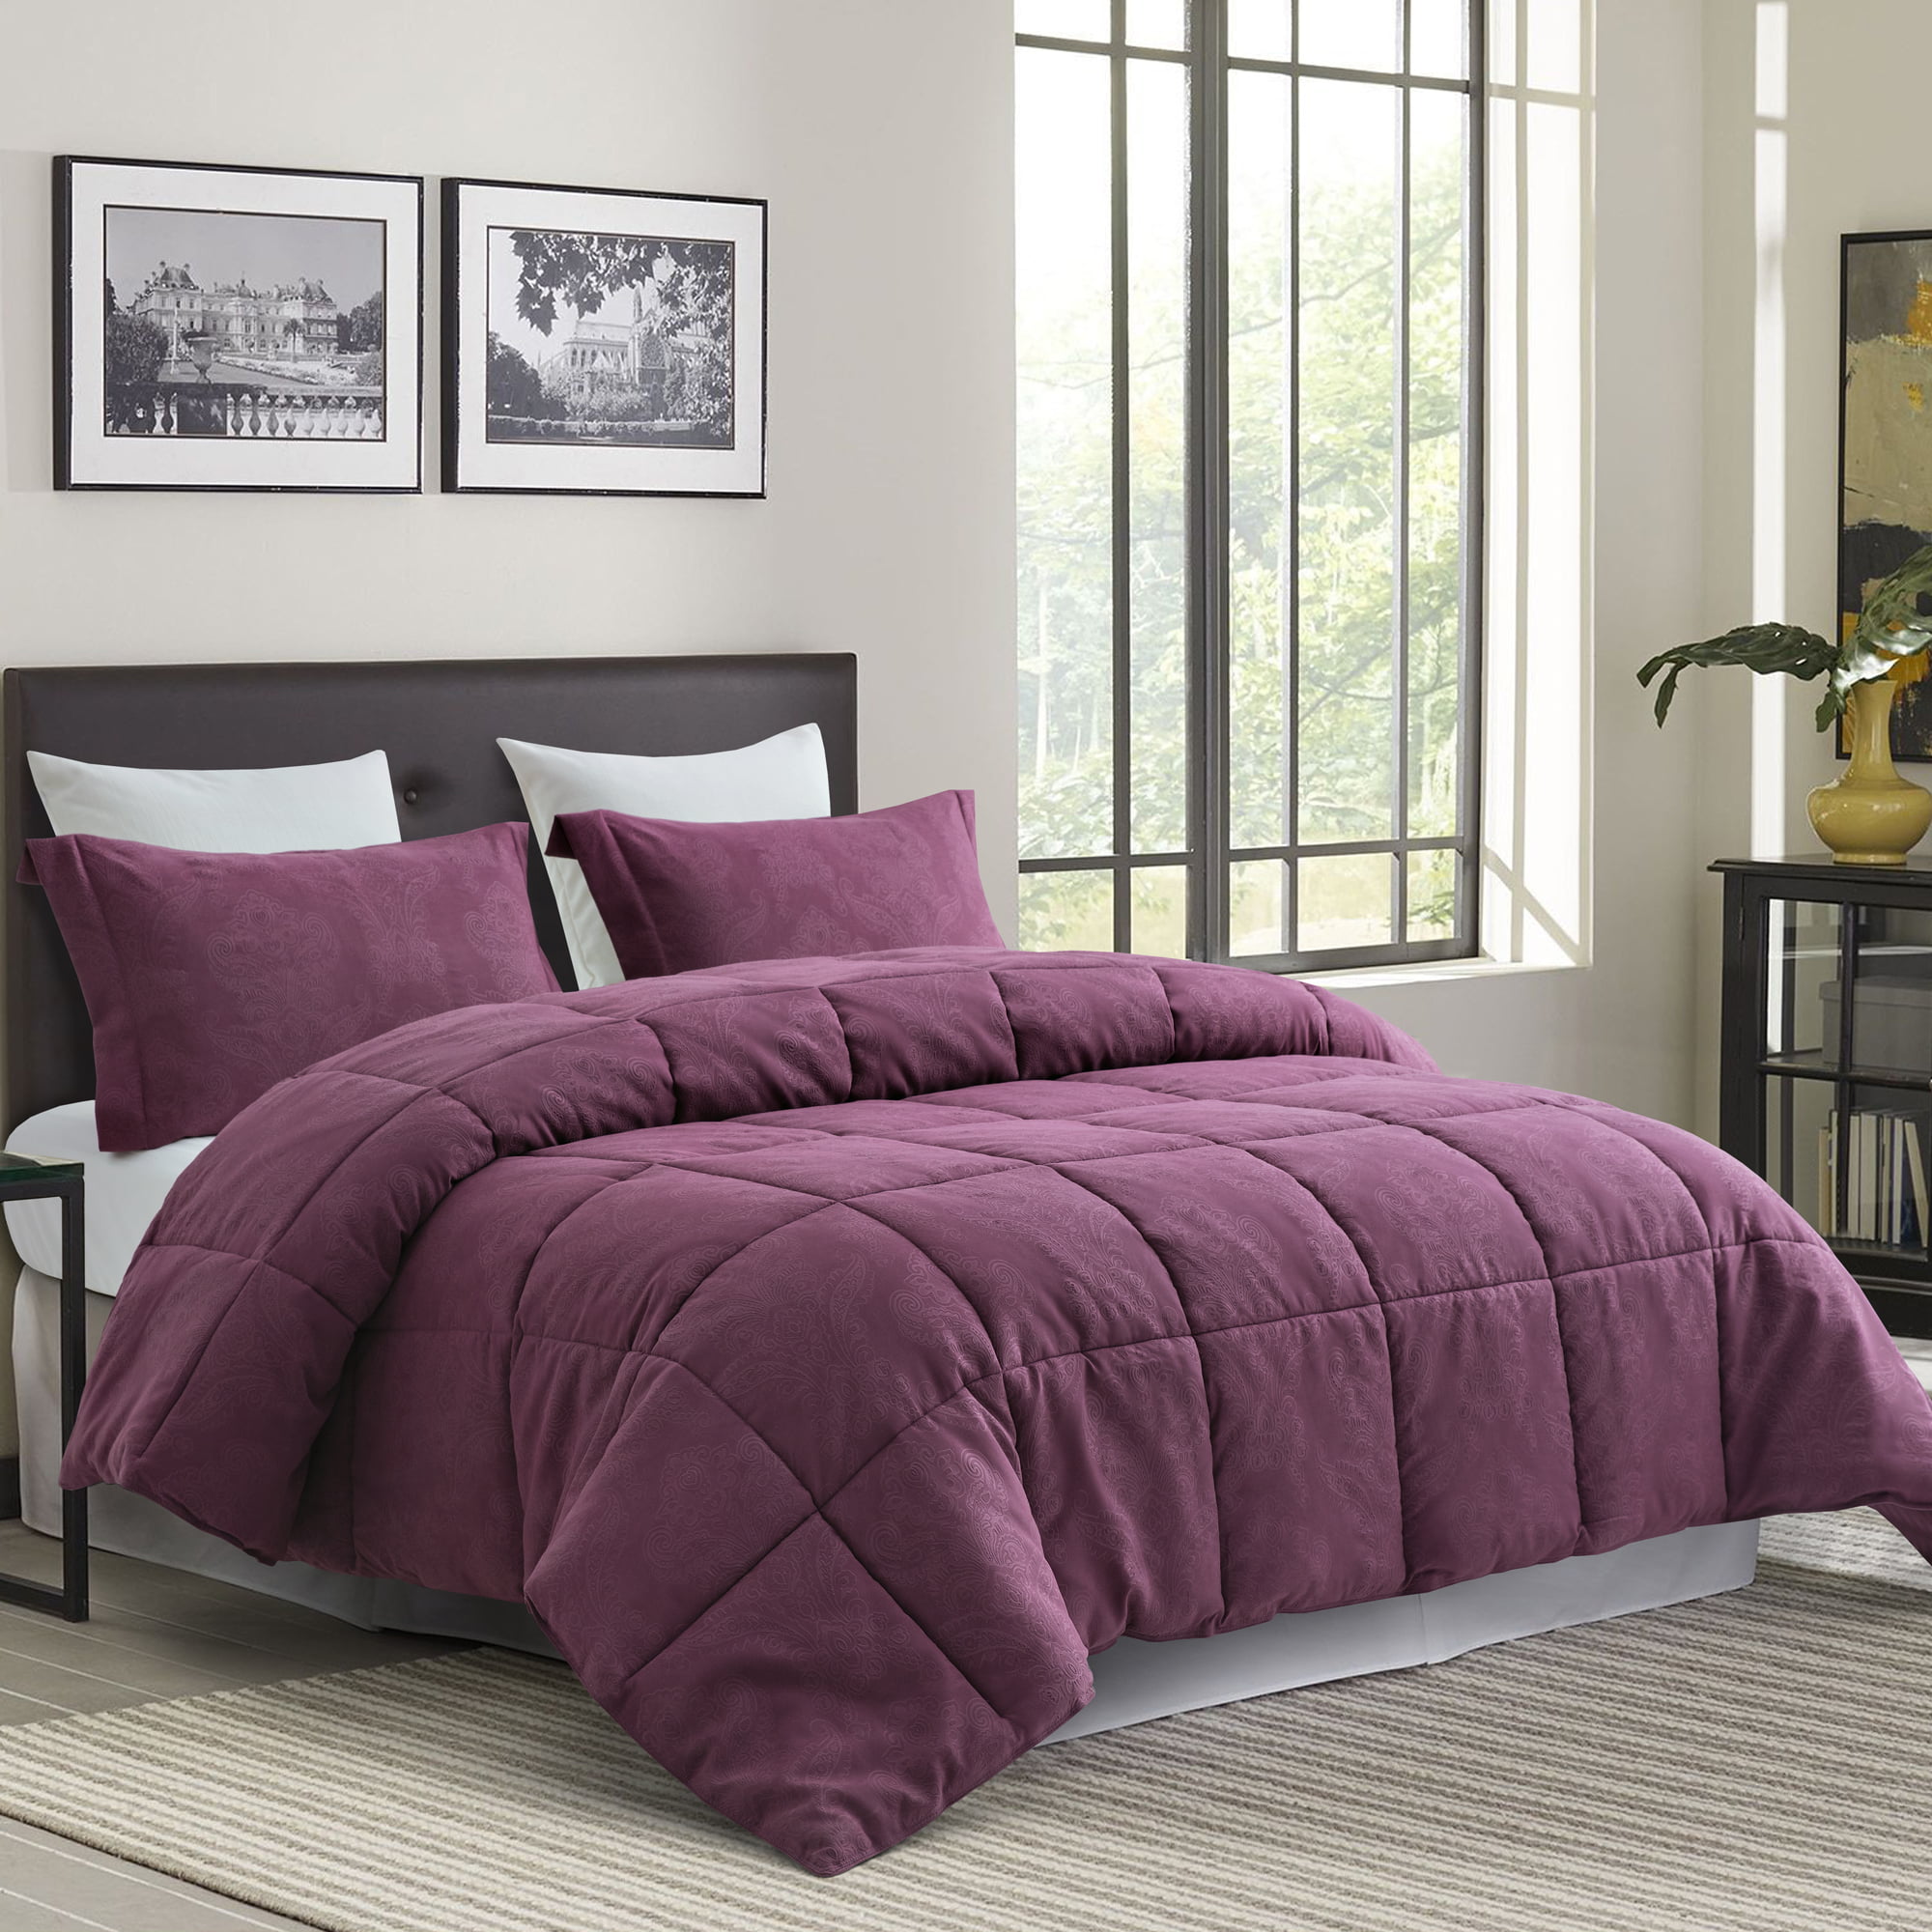 modern comforter sets